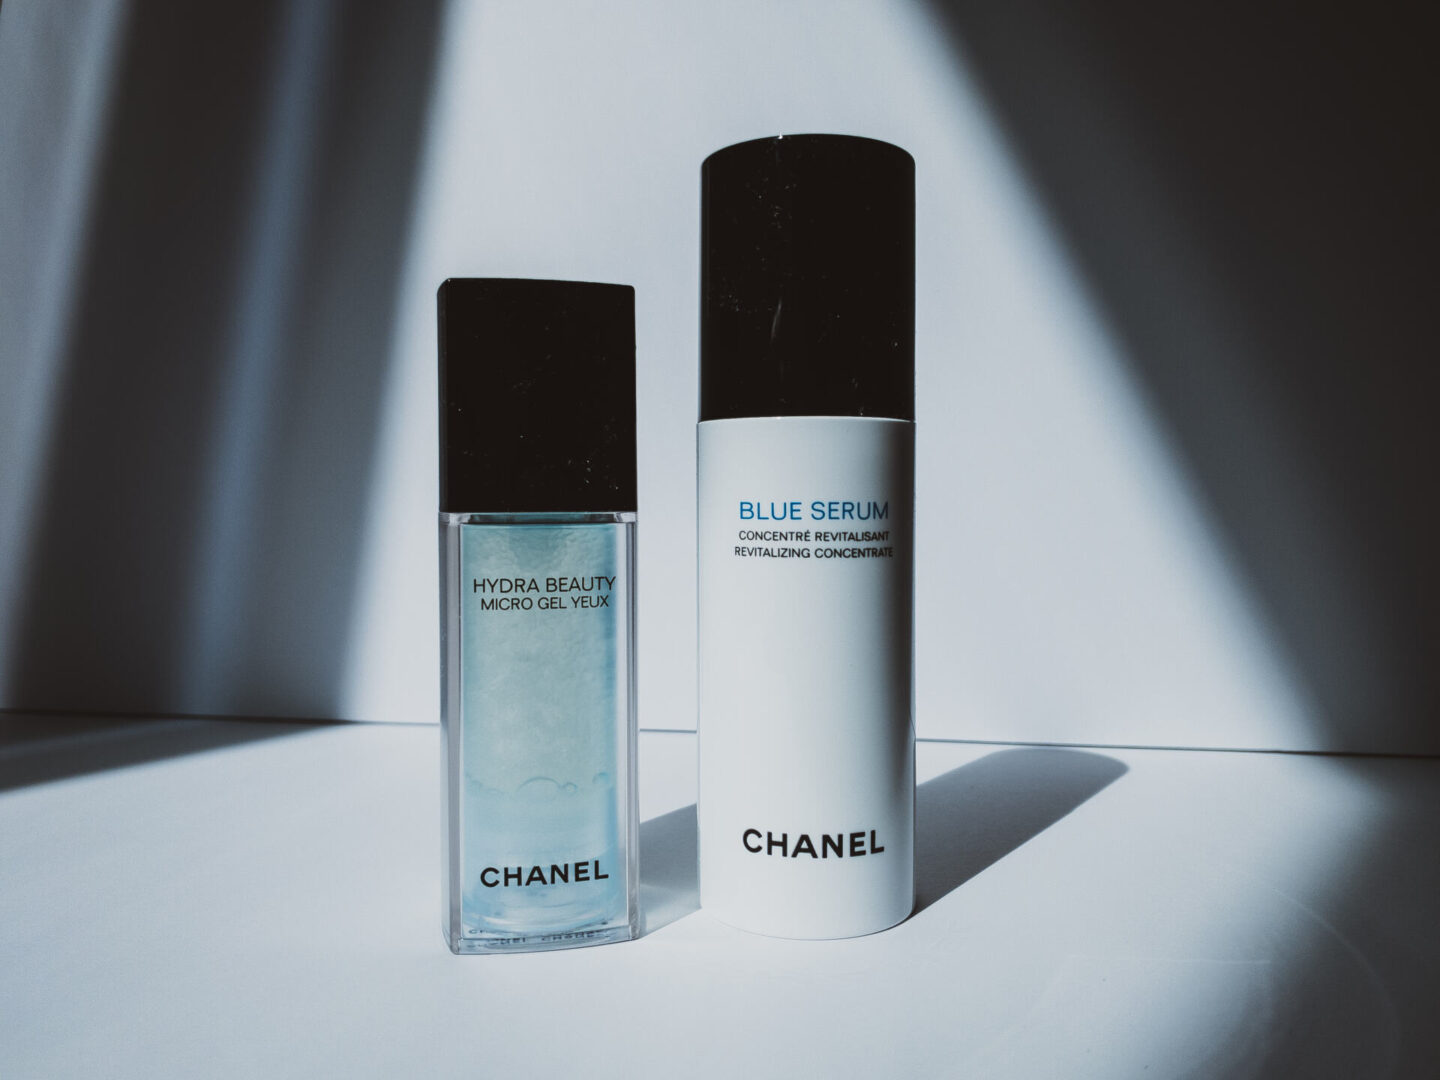 NEW Chanel HYDRA BEAUTY GEL YEUX Hydration Protection Radiance EYE GEL  .1oz/3ml